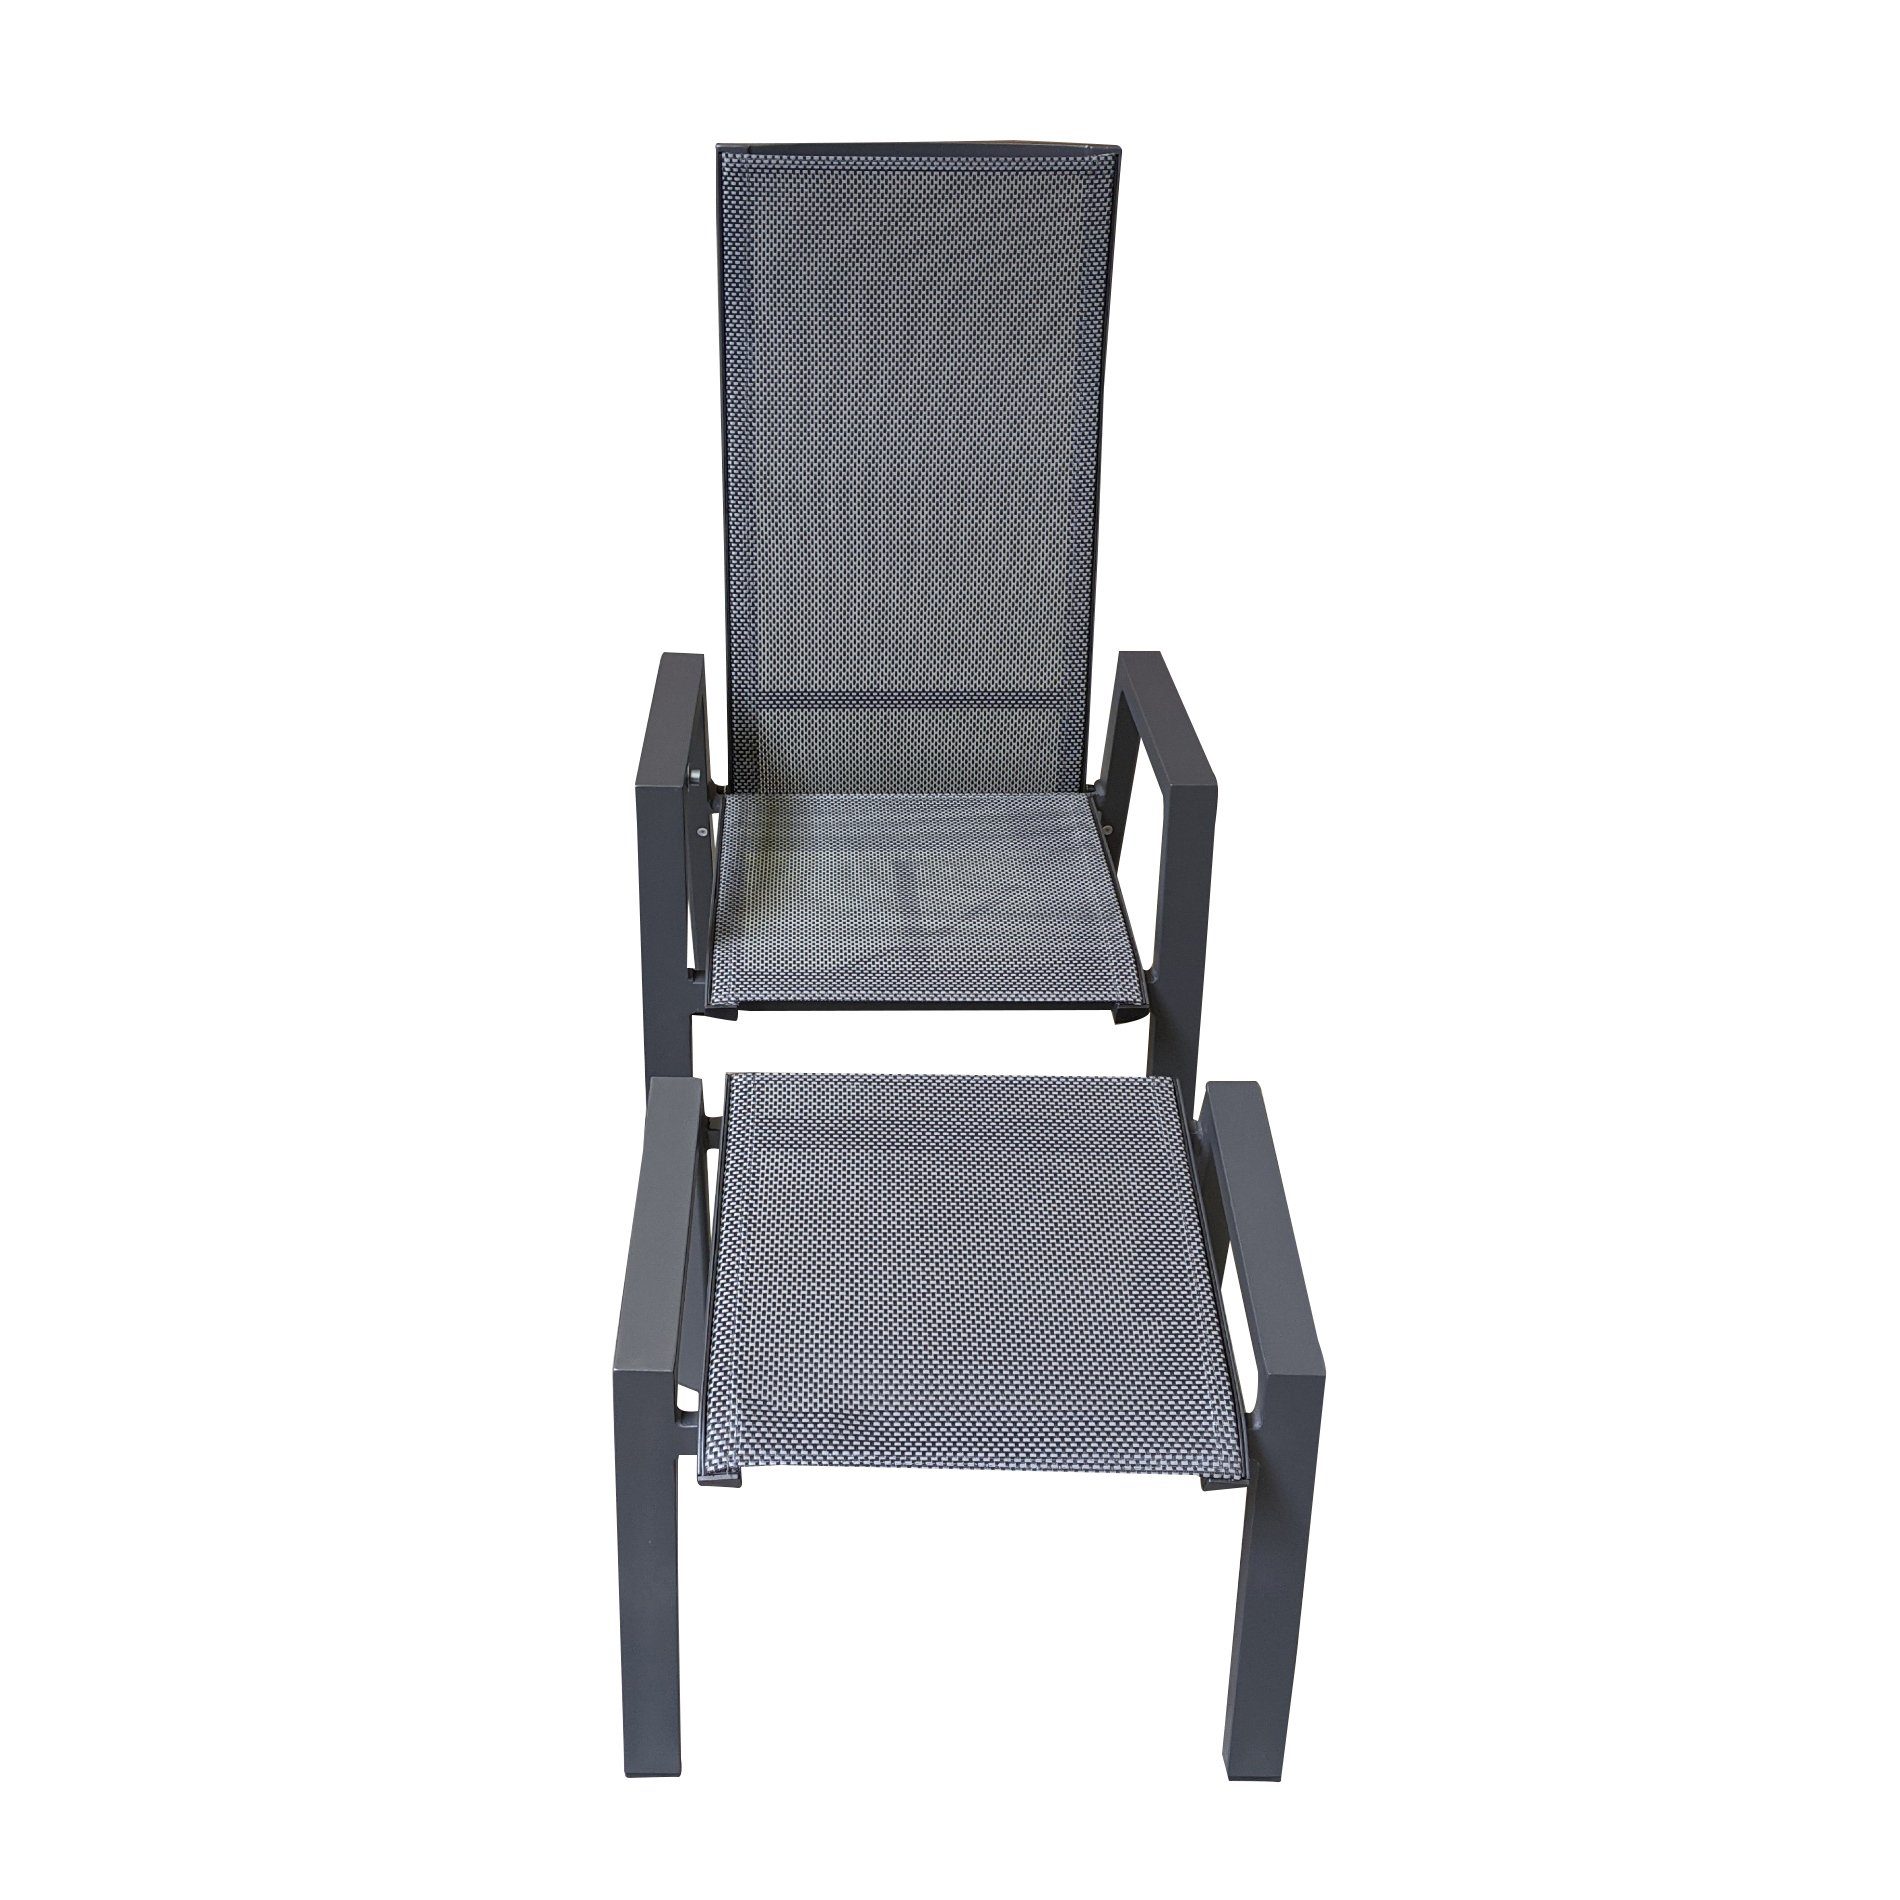 Lesli Living “Amir“ Hochlehner und Hocker, Gestelle Aluminium anthrazit matt, Sitz Textilgewebe schwarz/grau